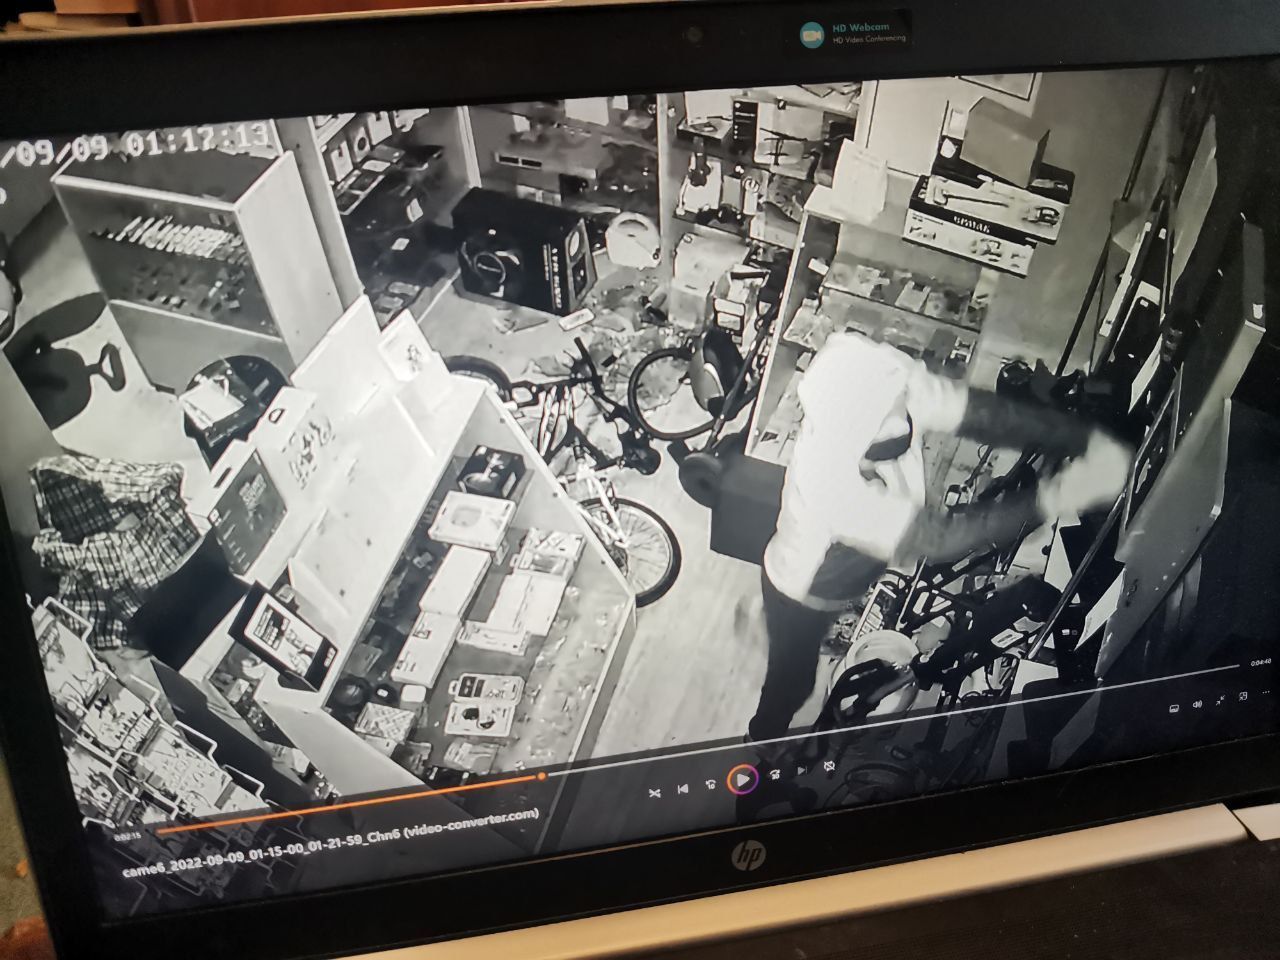 Серовчанина судят за кражу из комиссионного магазина электроники. Ночью разбил окно – вынес товар и кассу